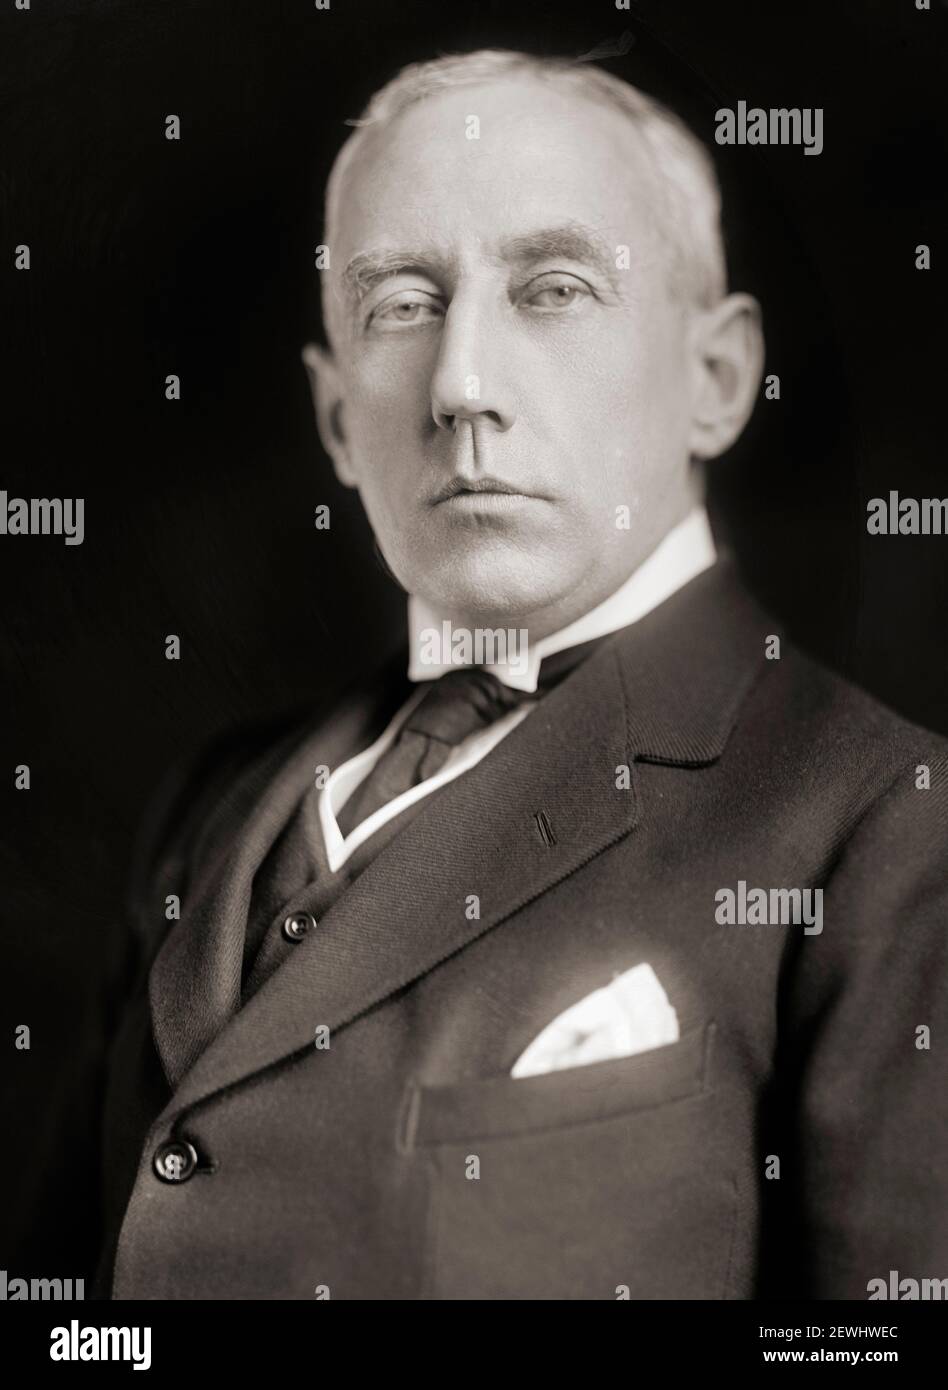 Roald Engelbregt Gravning Amundsen, 1872 – 1928. explorateur norvégien des régions polaires, chef de l'expédition antarctique de 1910 à 12, qui a été la première à atteindre le pôle Sud. Après une photographie du début du XXe siècle. Banque D'Images